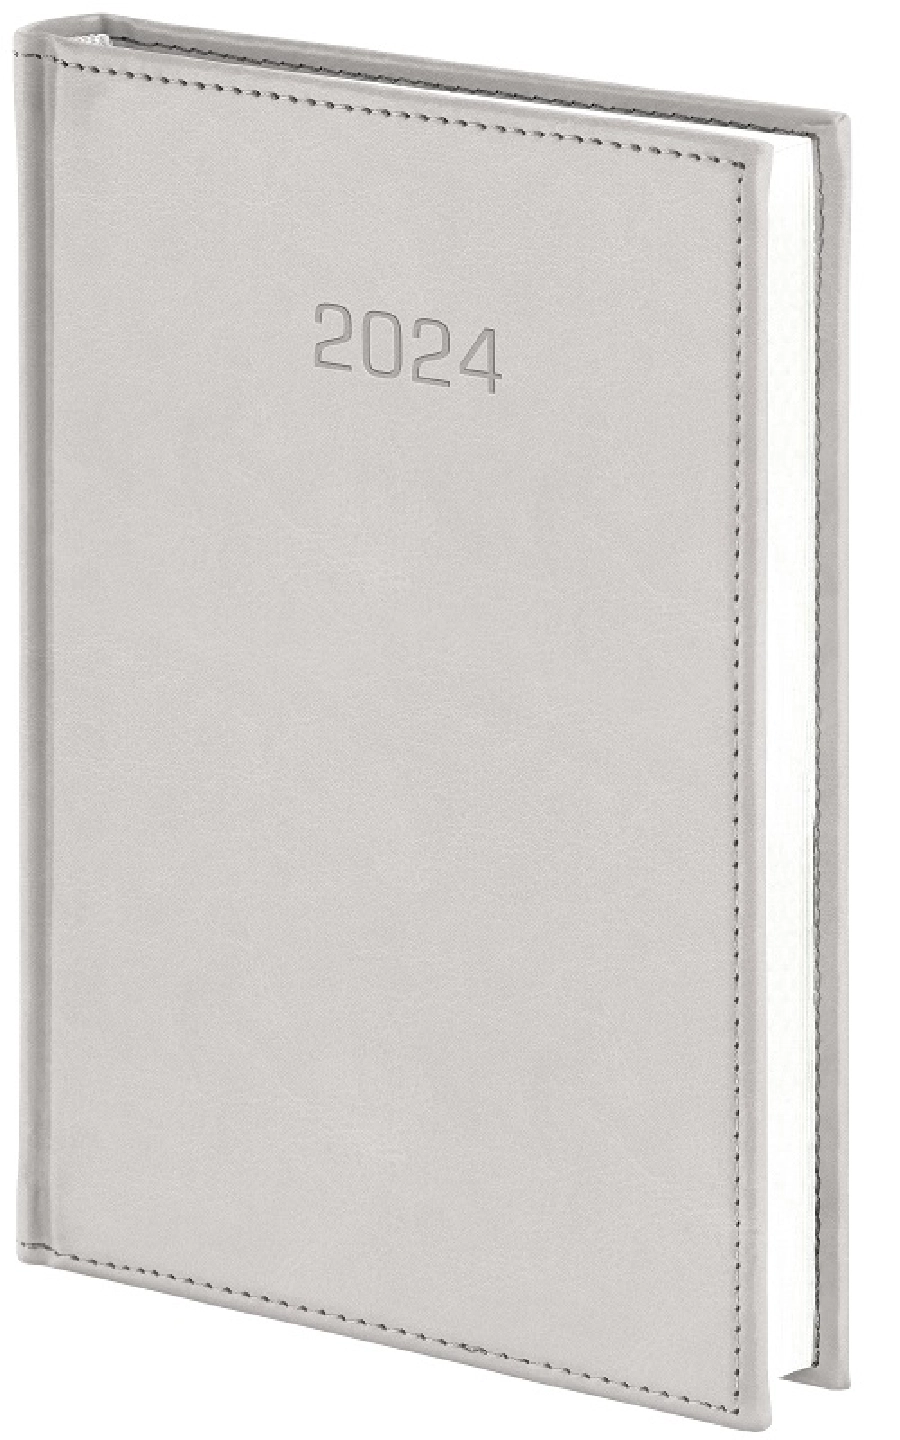 Nebraska kalendarz książkowy 2024 dzienny B5 GR-160080 brązowy